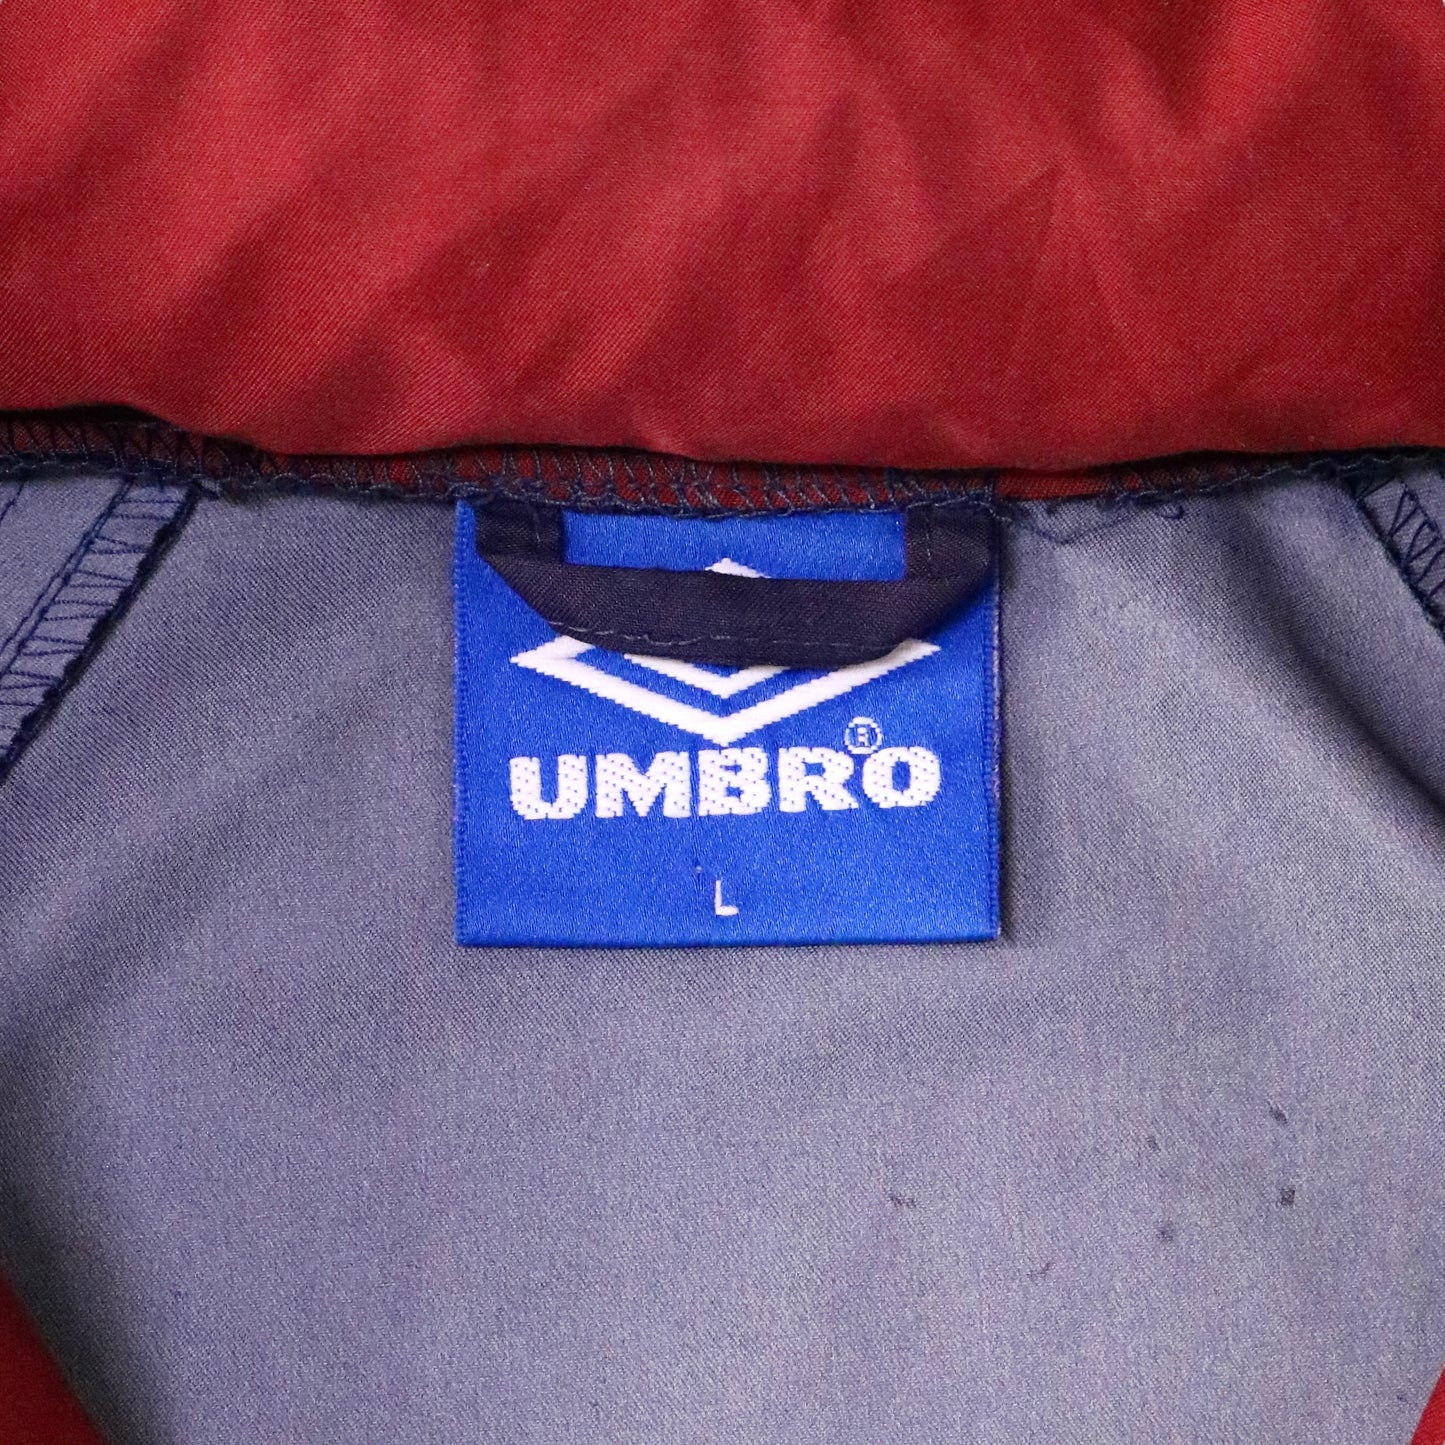 90’s "UMBRO" Color switching nylon jacket